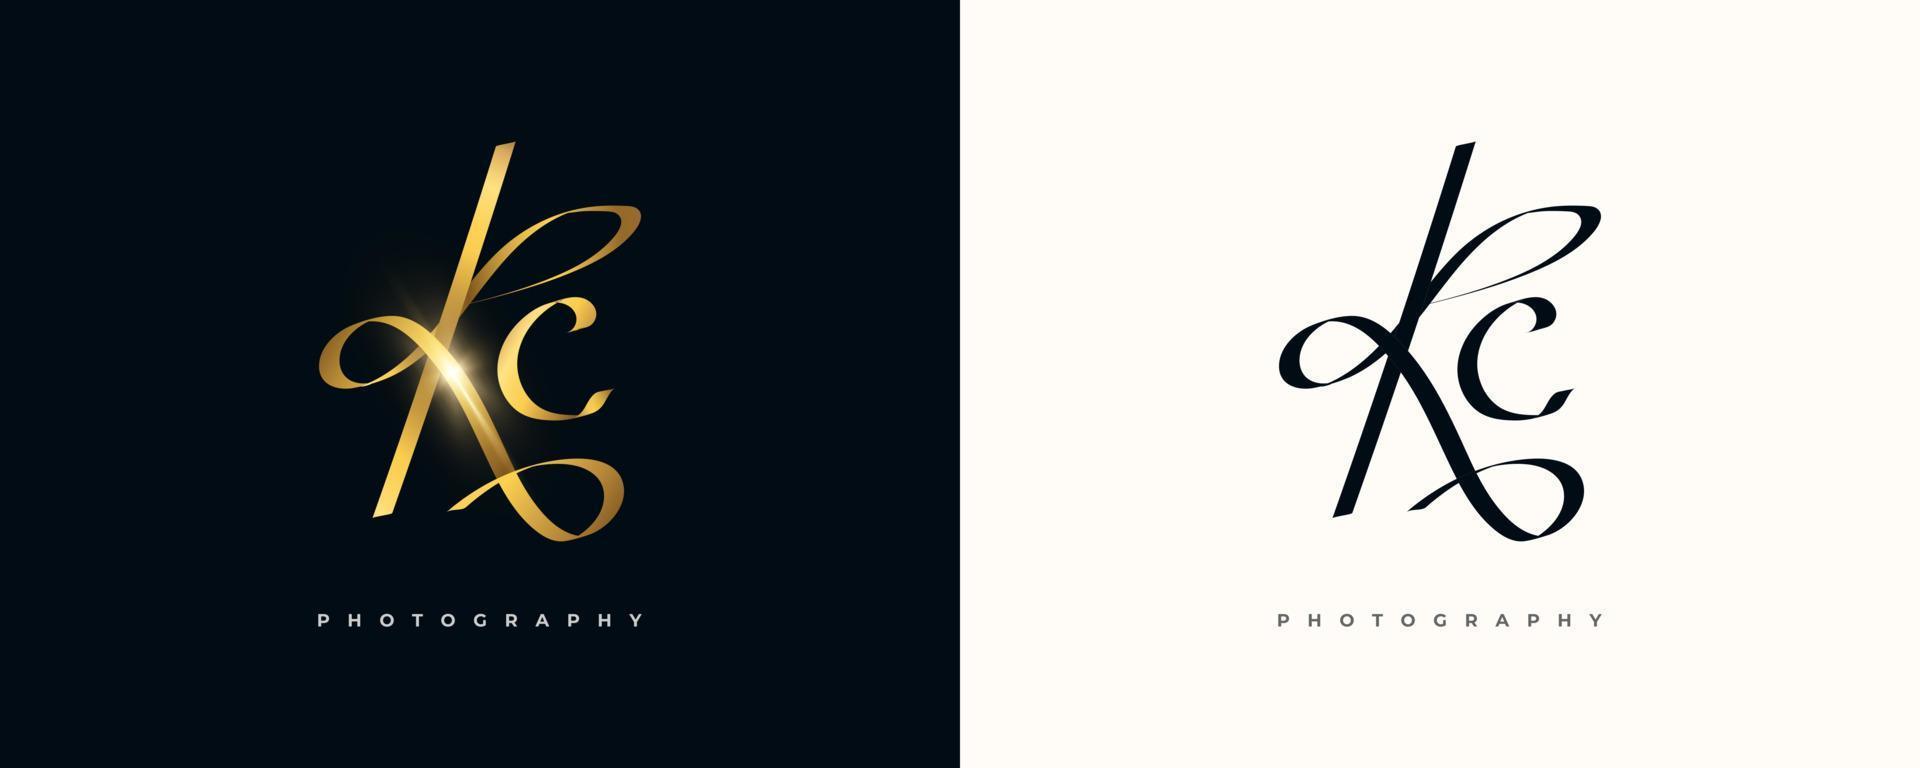 Diseño del logotipo de la firma inicial kc con un estilo de escritura dorado elegante y minimalista. diseño inicial del logotipo k y c para bodas, moda, joyería, boutique e identidad de marca comercial vector